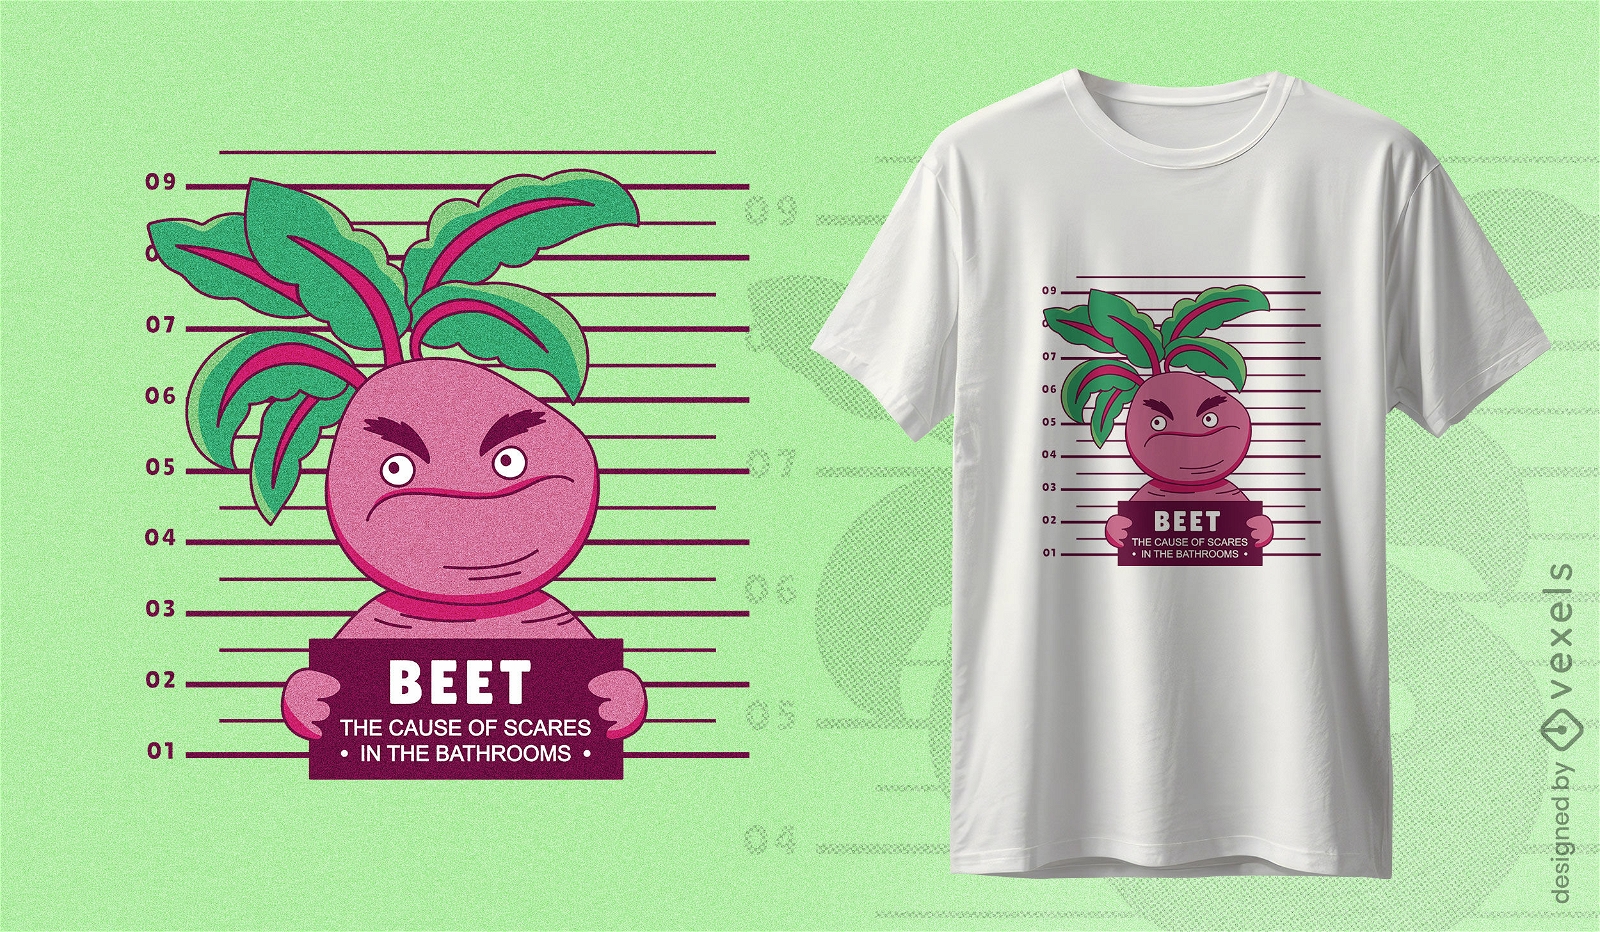 Beet mugshot t-shirt design